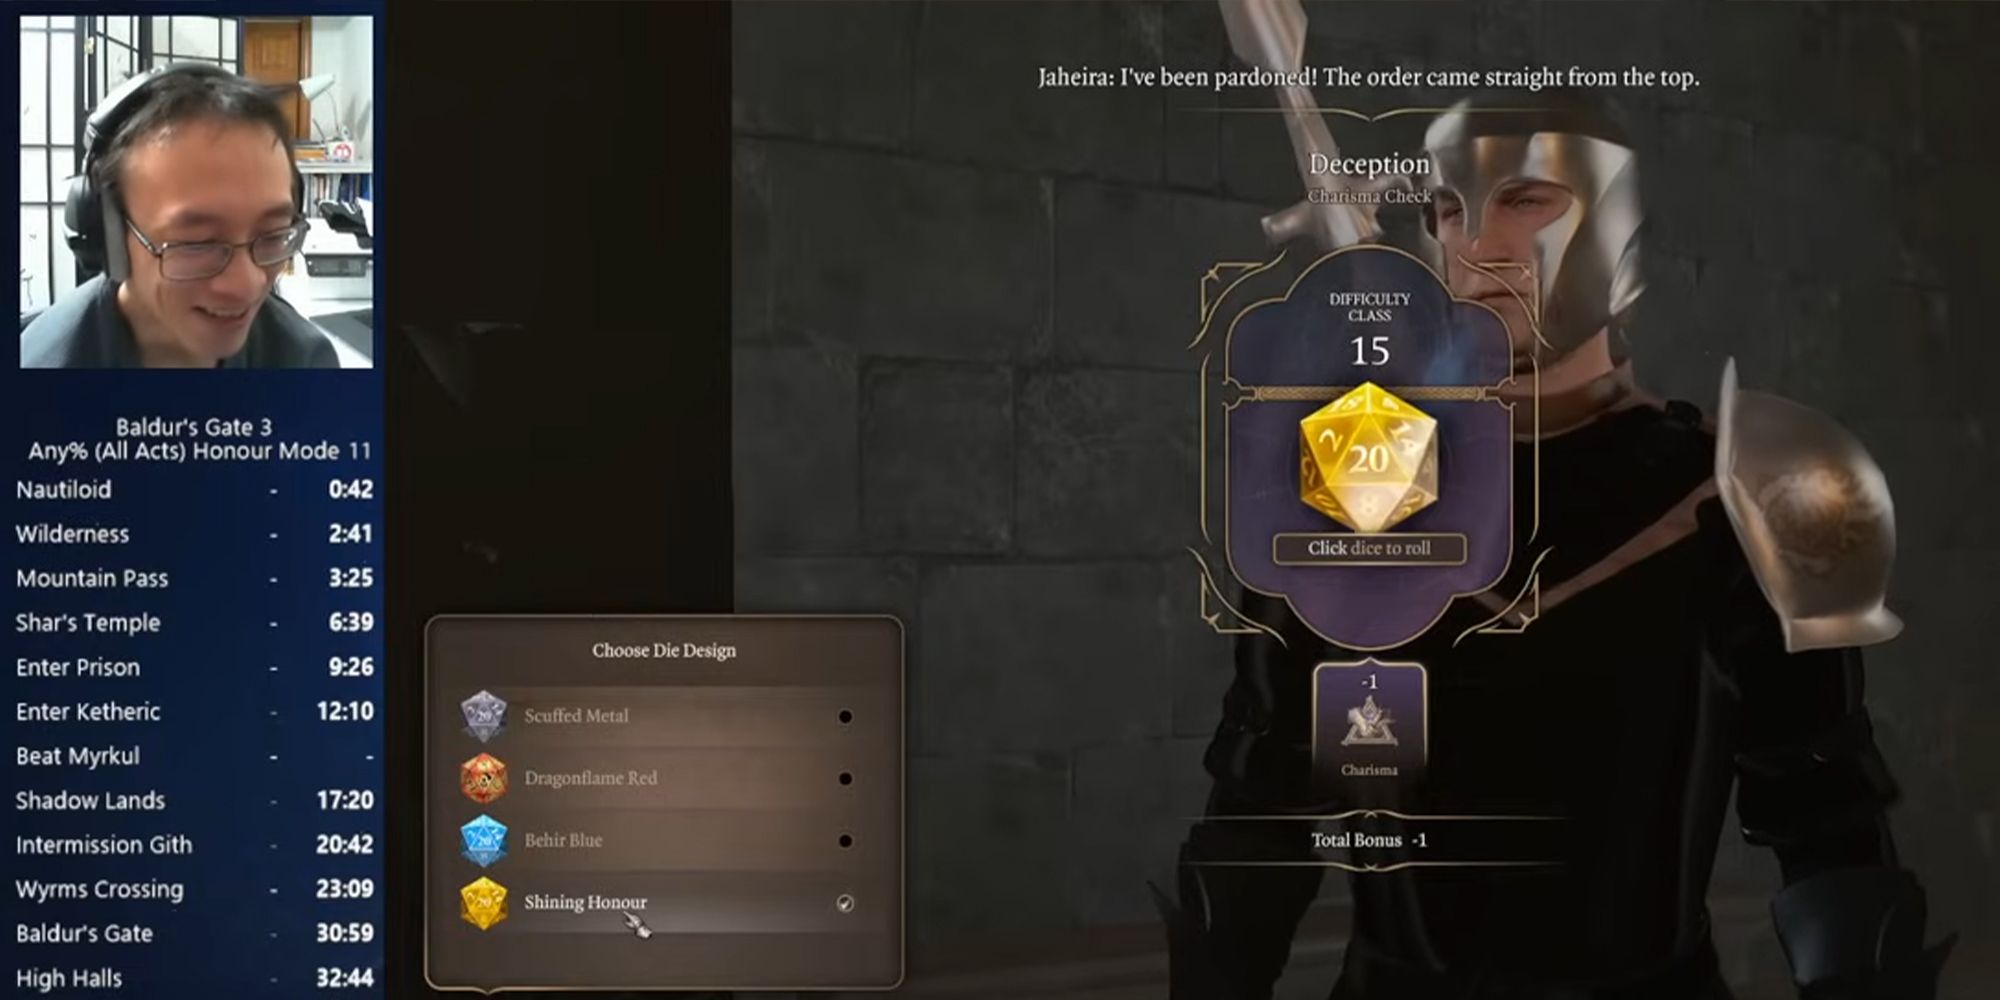 Baldur's Gate 3 speedrunner showing off new Shining Honour golden dice for beating Honour mode